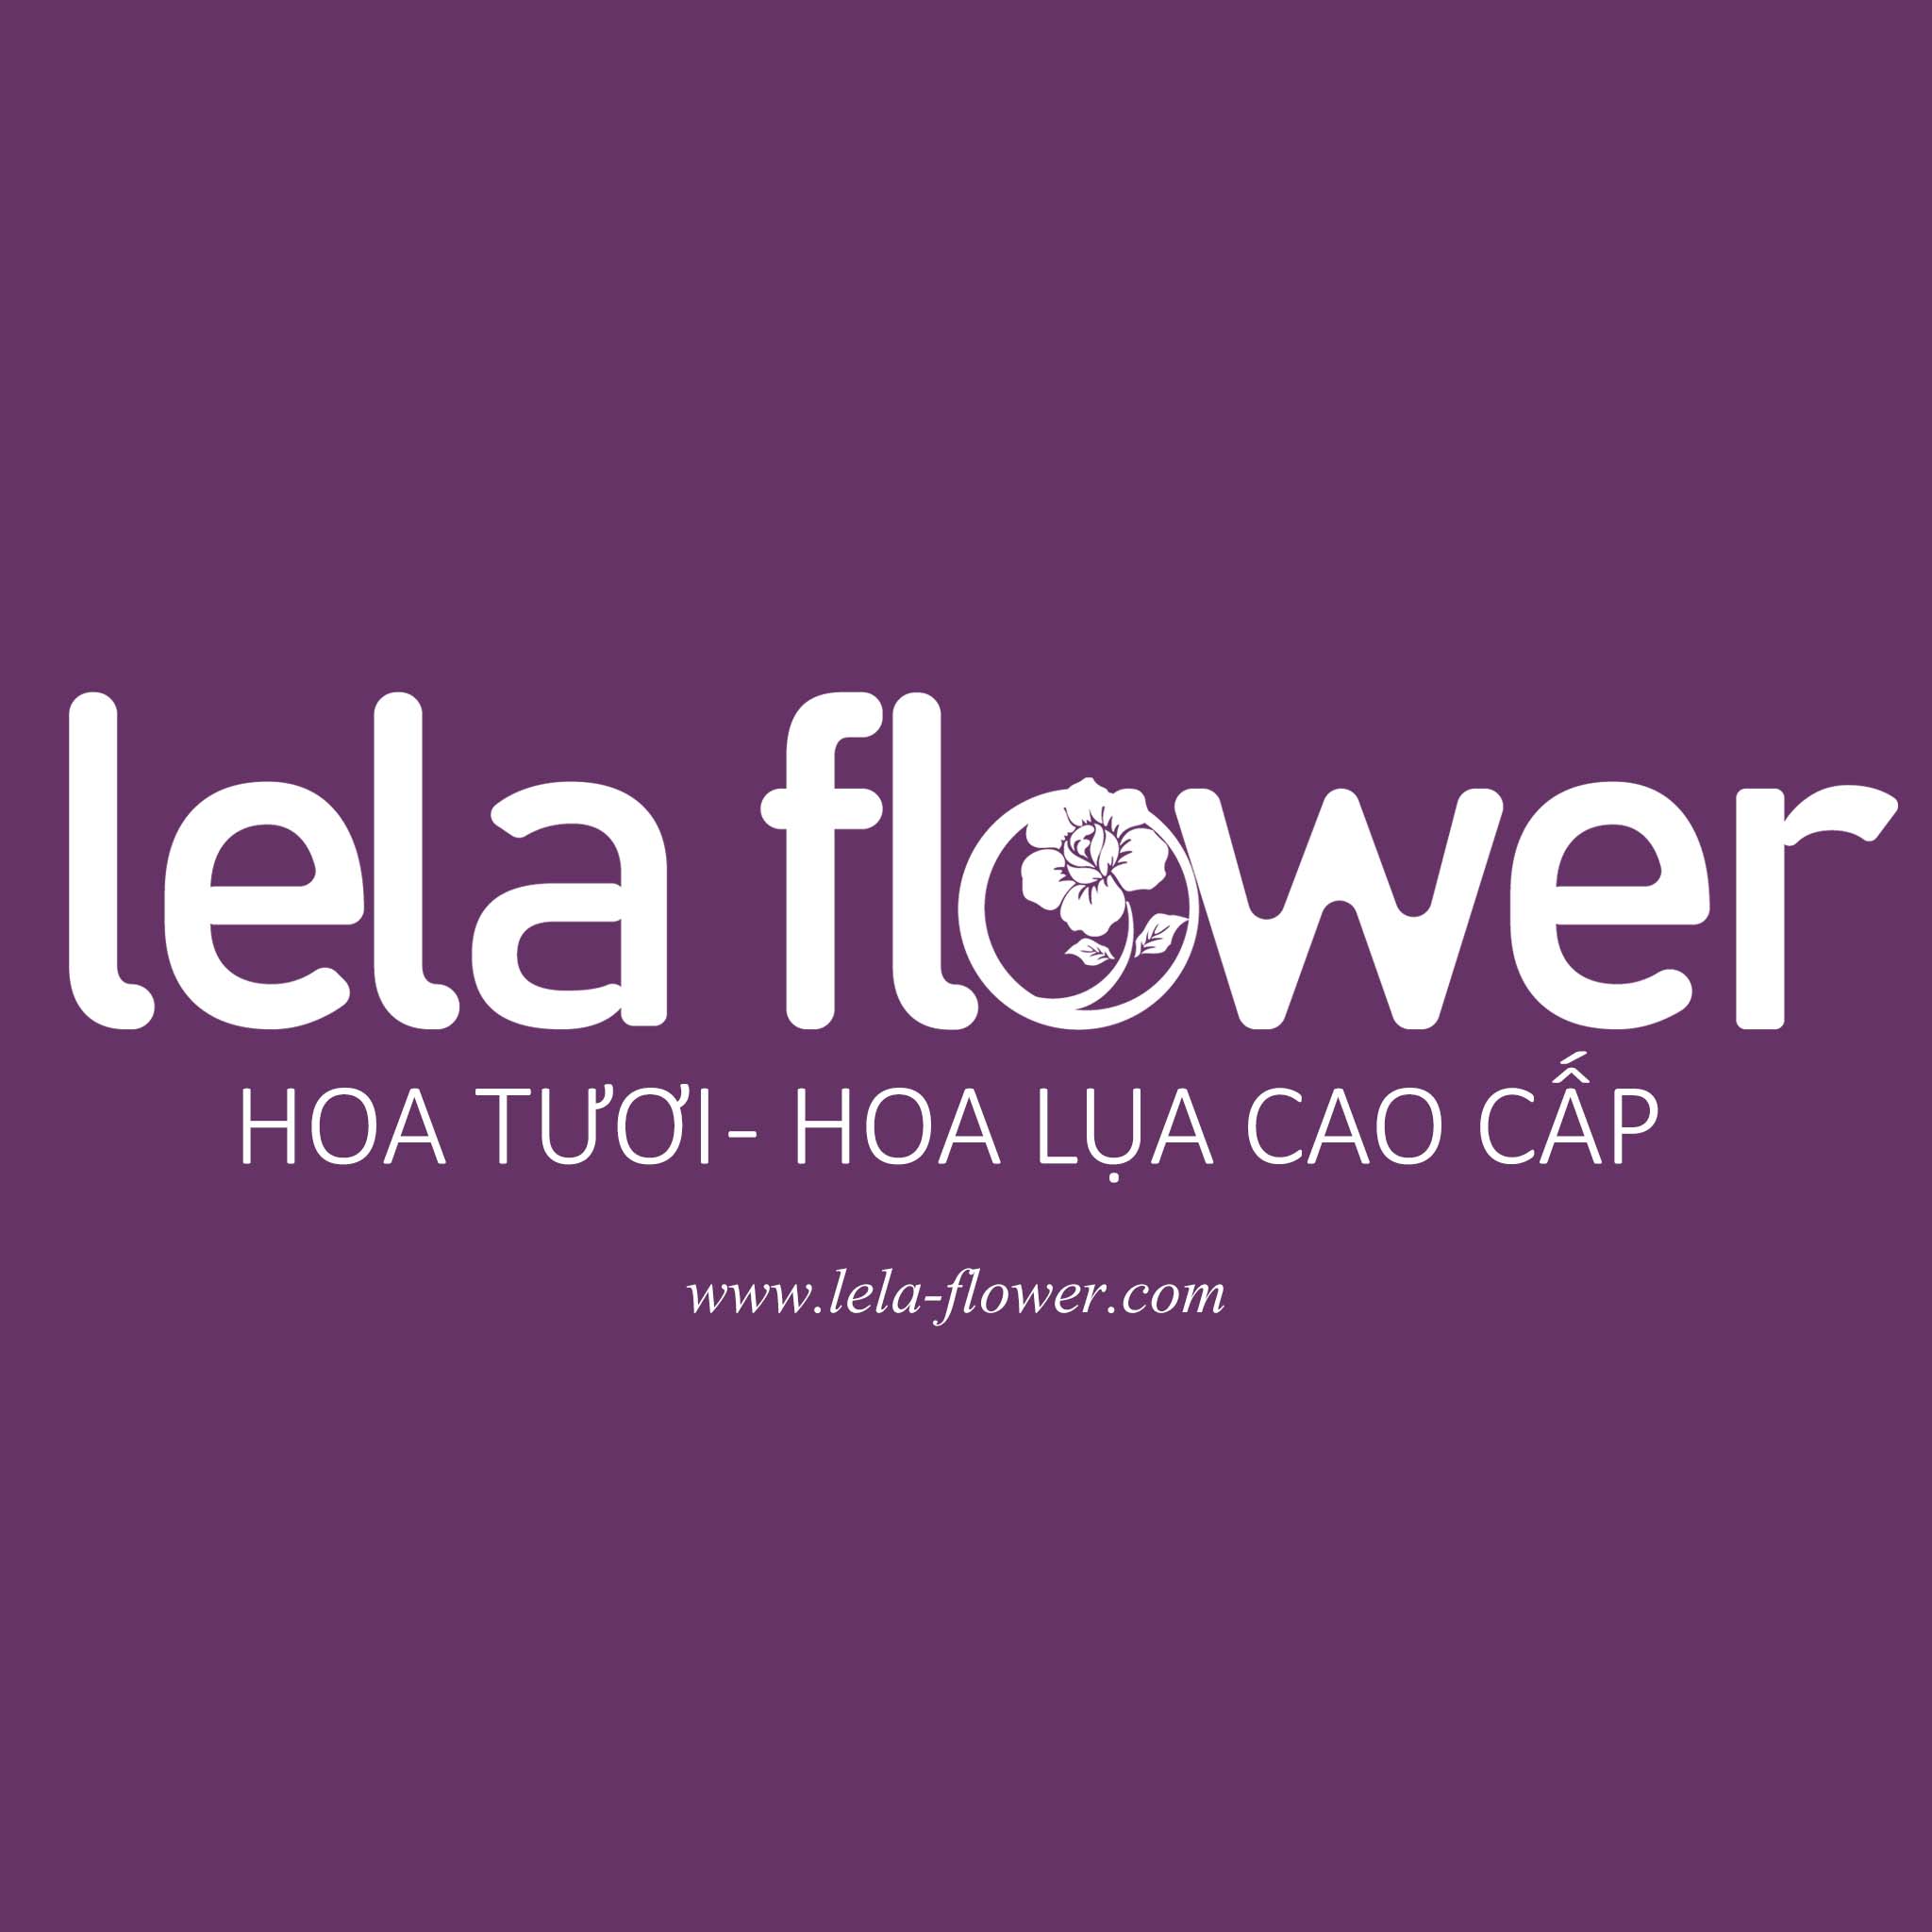 100+ Mẫu lẵng hoa, kệ hoa khai trương, hoa chúc mừng tân gia ở Hà Nội